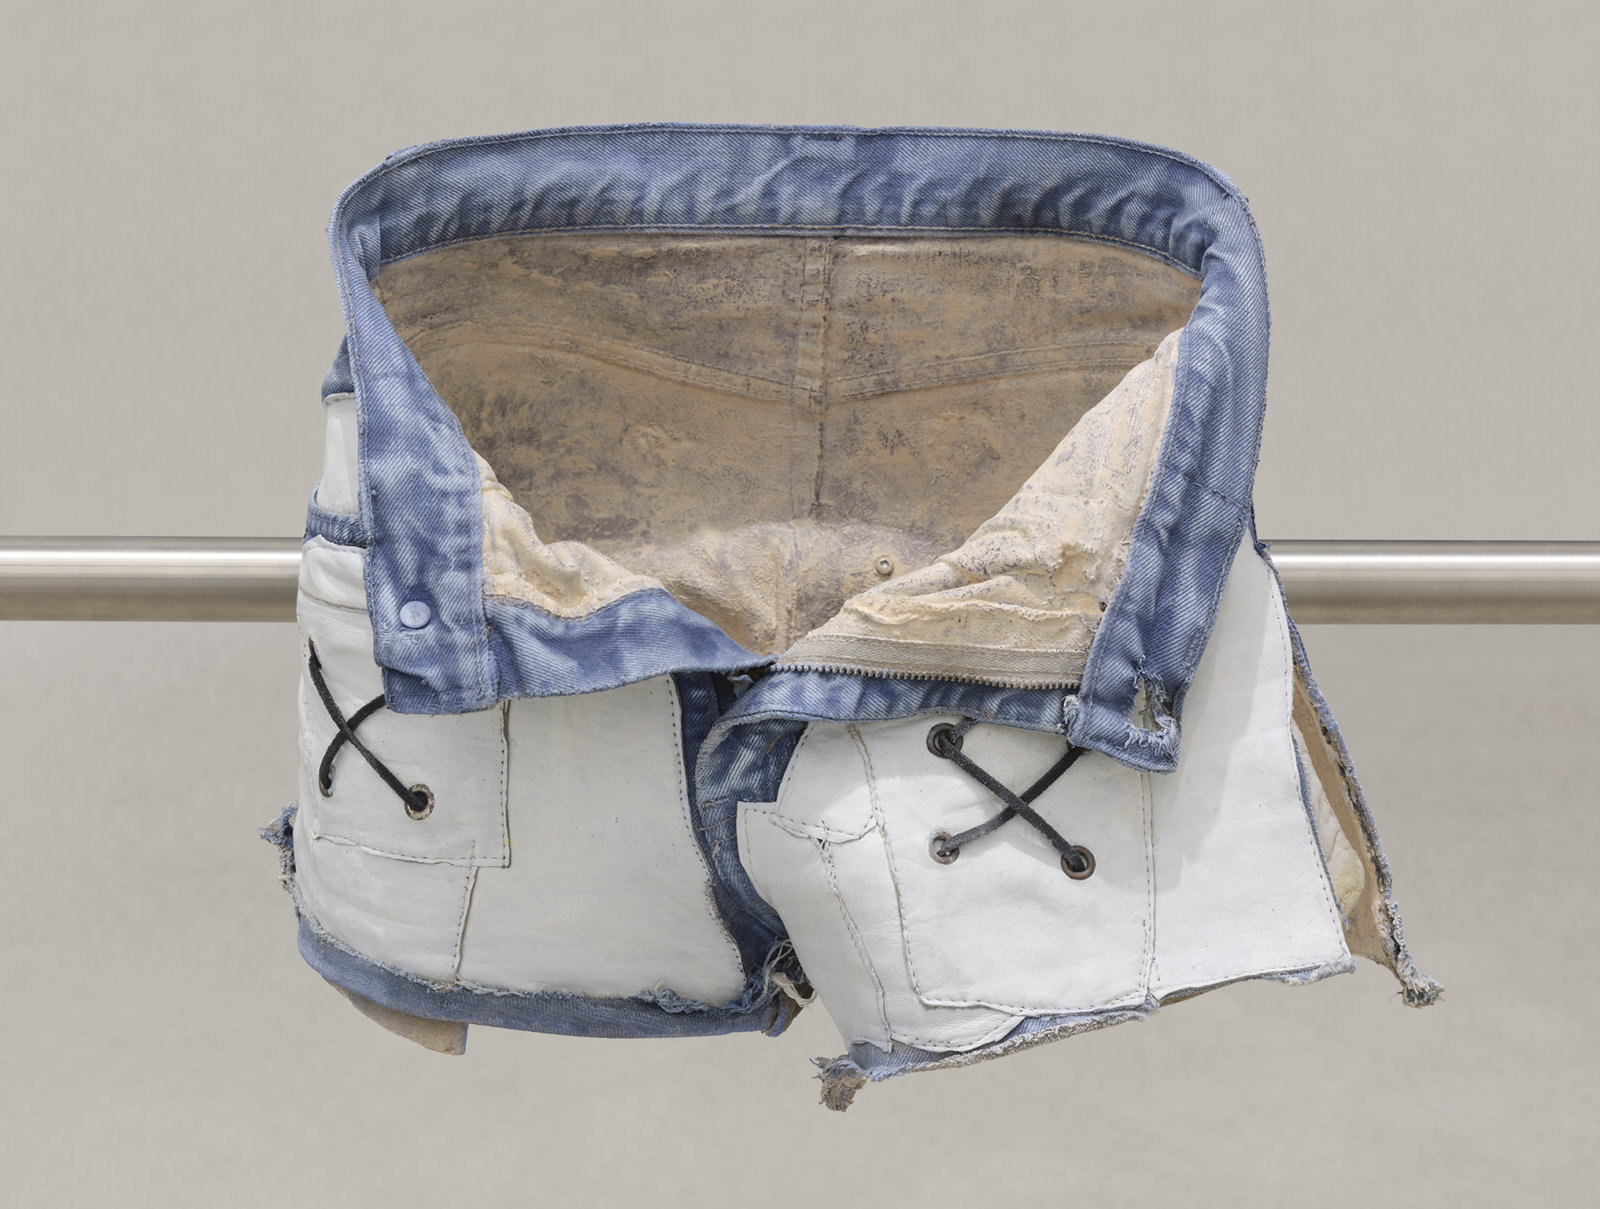 Valérie Blass, L’homme réparé (detail), 2019, stainless steel, denim shorts, epoxy resin, acrylic paint, 41 x 89 x 12 in. (104 x 226 x 31 cm)